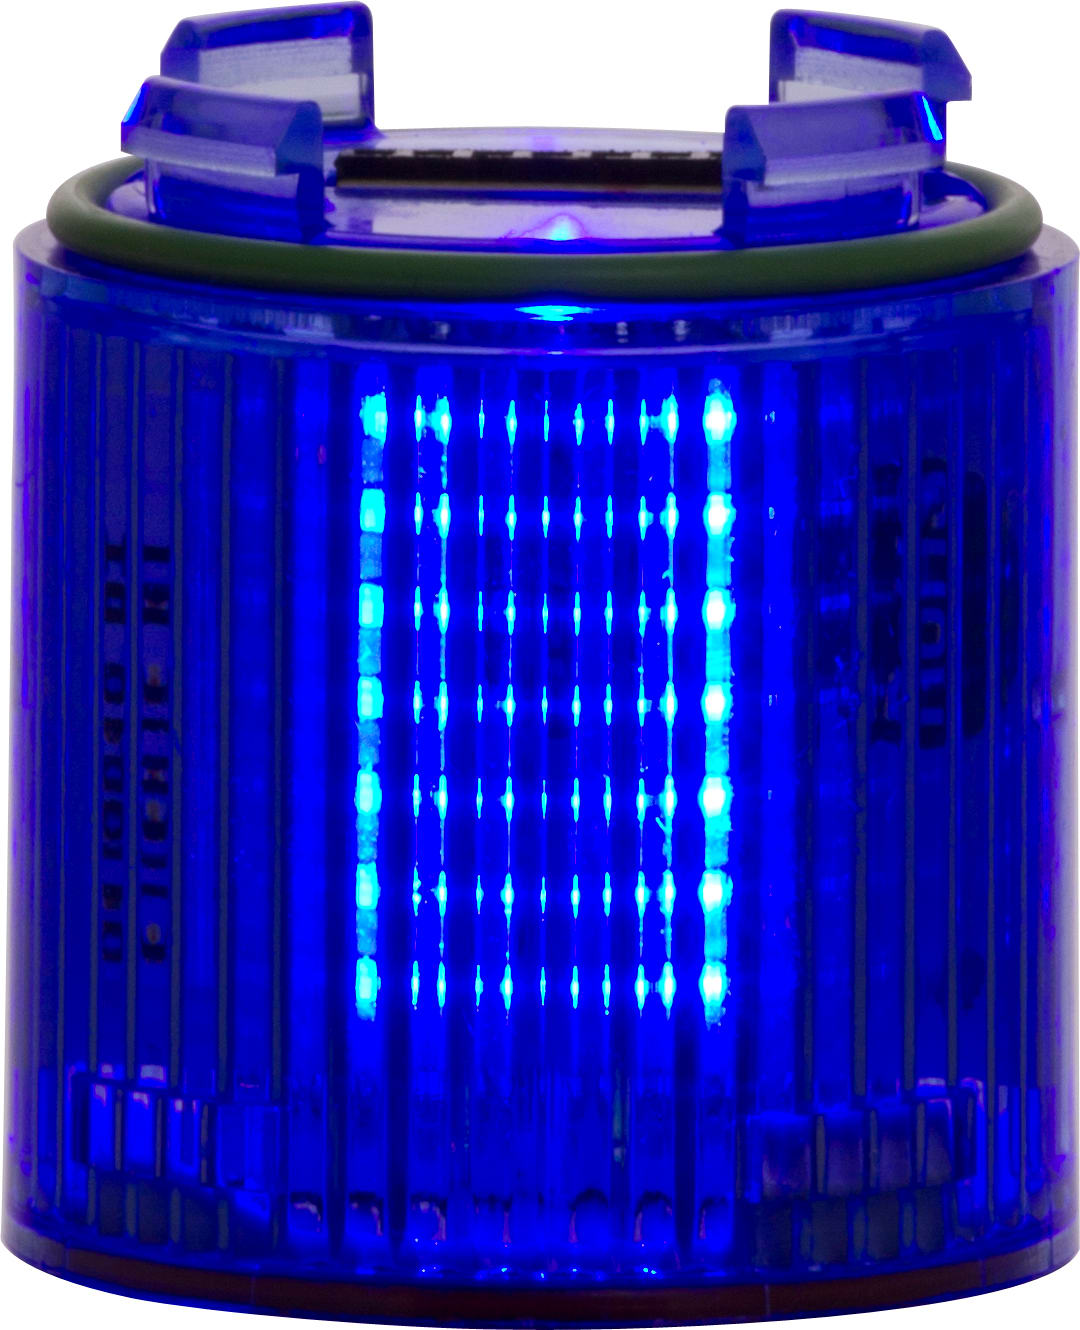 SIRENA - BABYTWS : élément lumineux bleu - lumière fixe - lentille colorée - V24ACDC